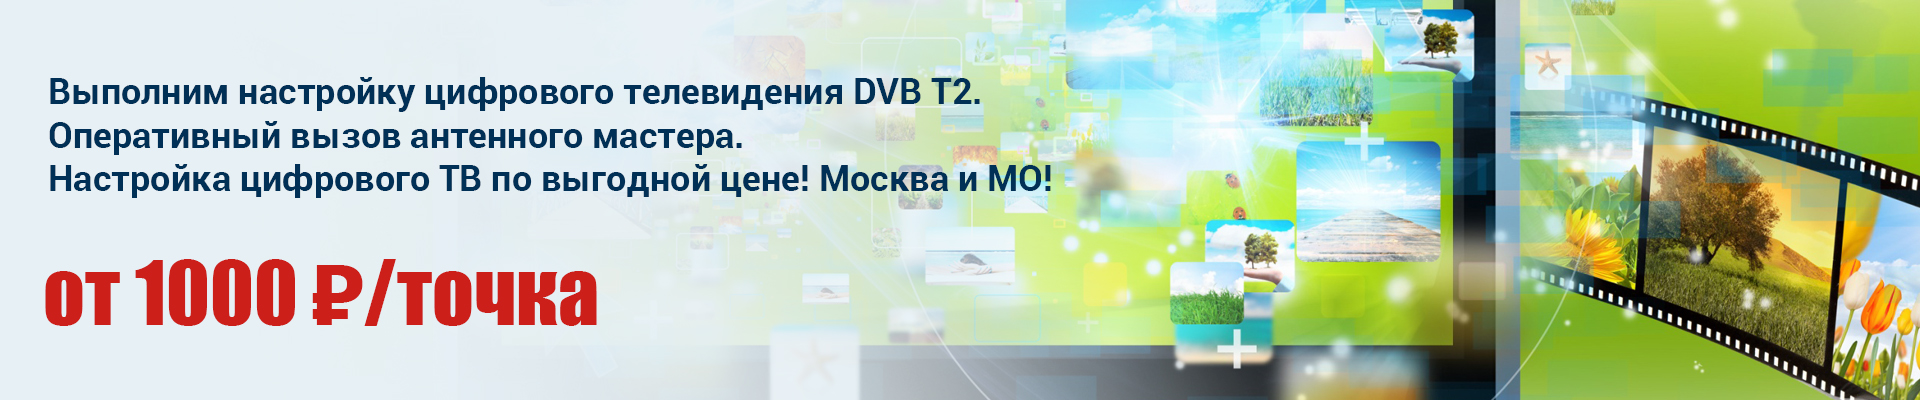 Настройка цифрового телевидения DVB T2